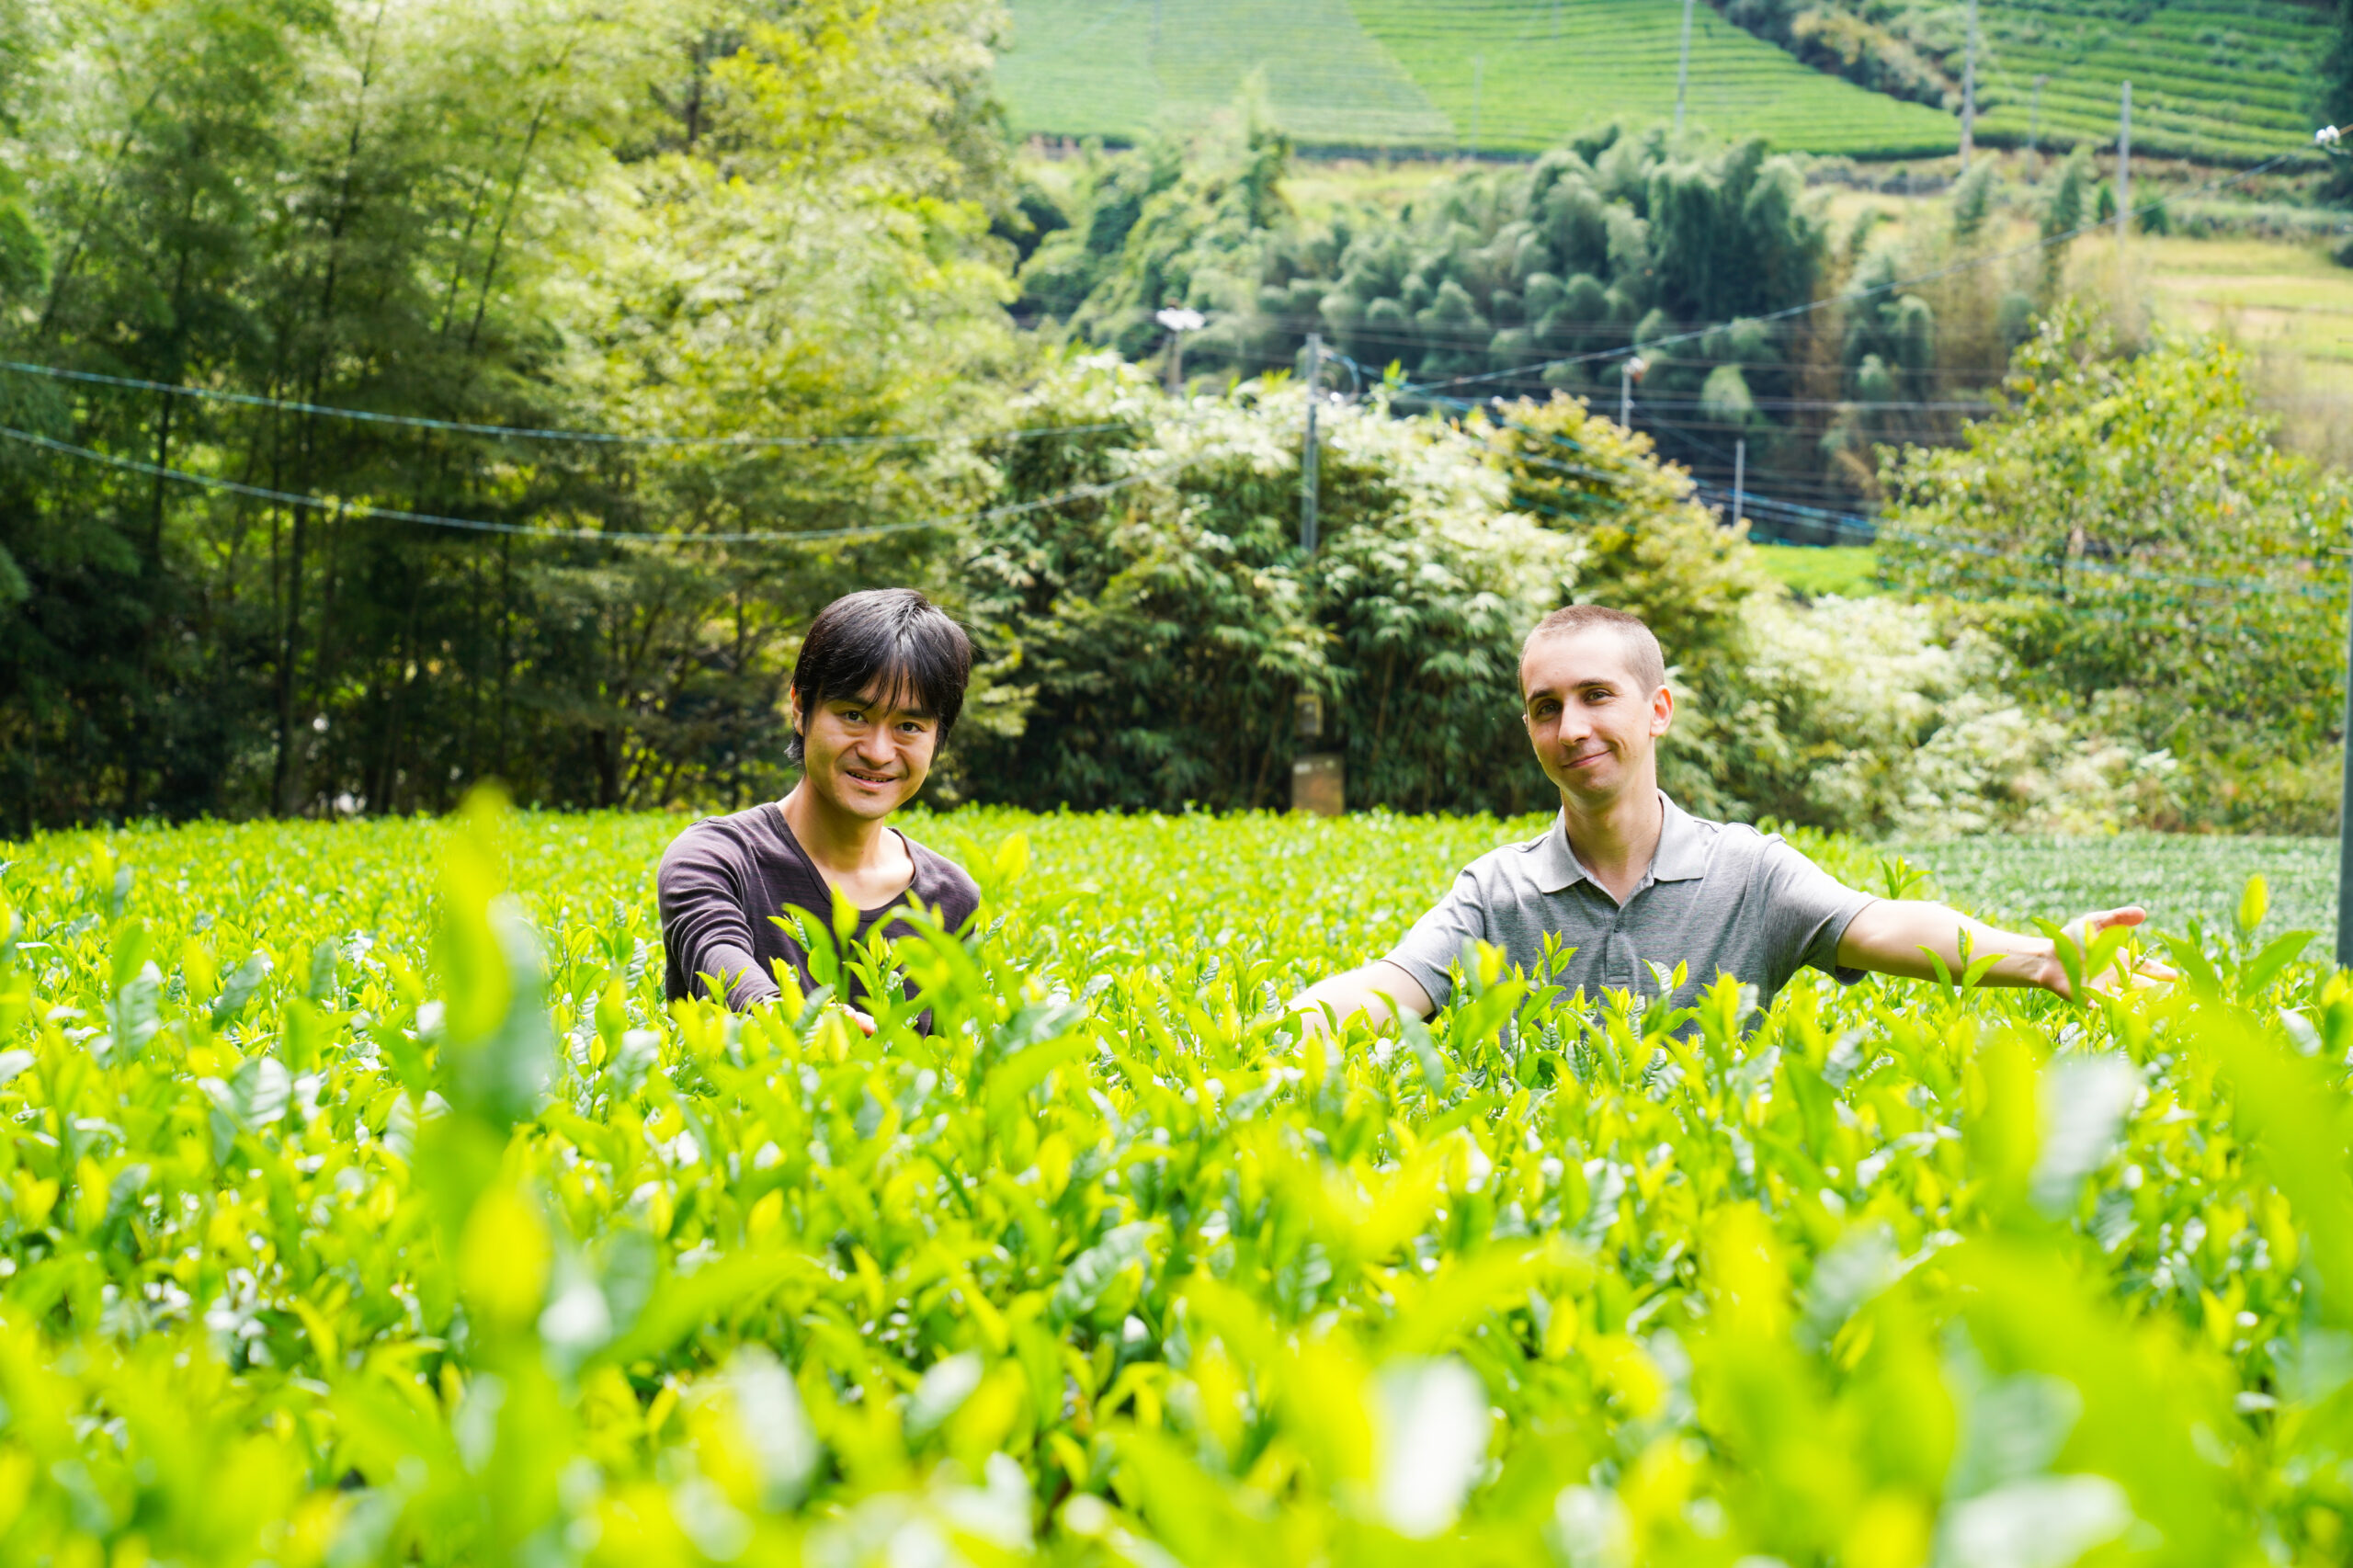 京都由五感開啟茶的感官體驗之旅| 深度推薦| Another Kyoto 官方旅遊